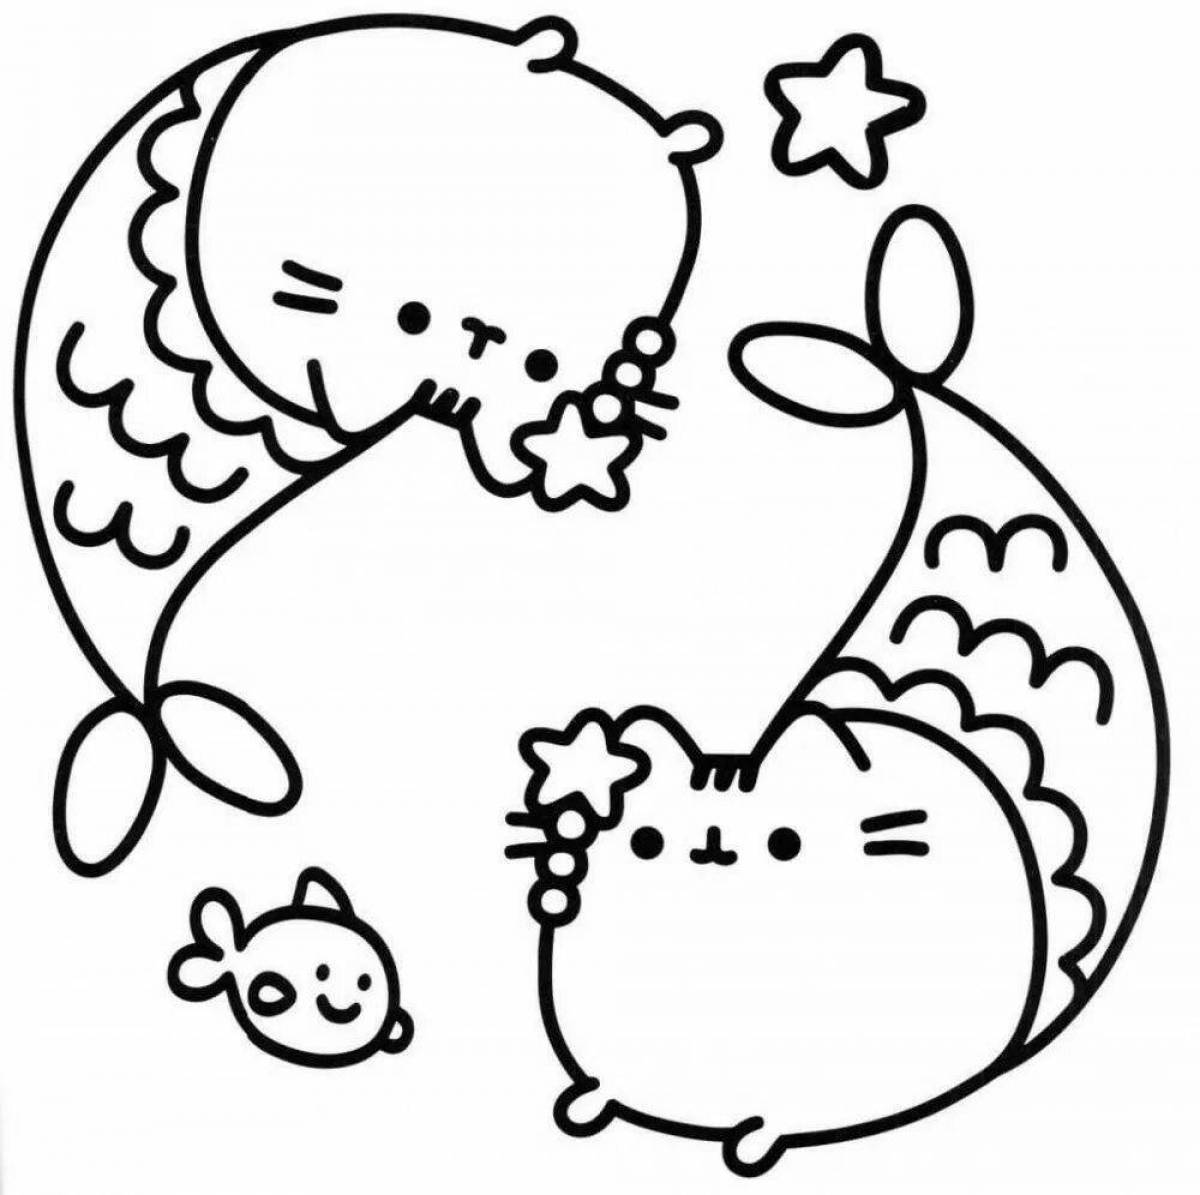 Увлекательная раскраска кота-русалки